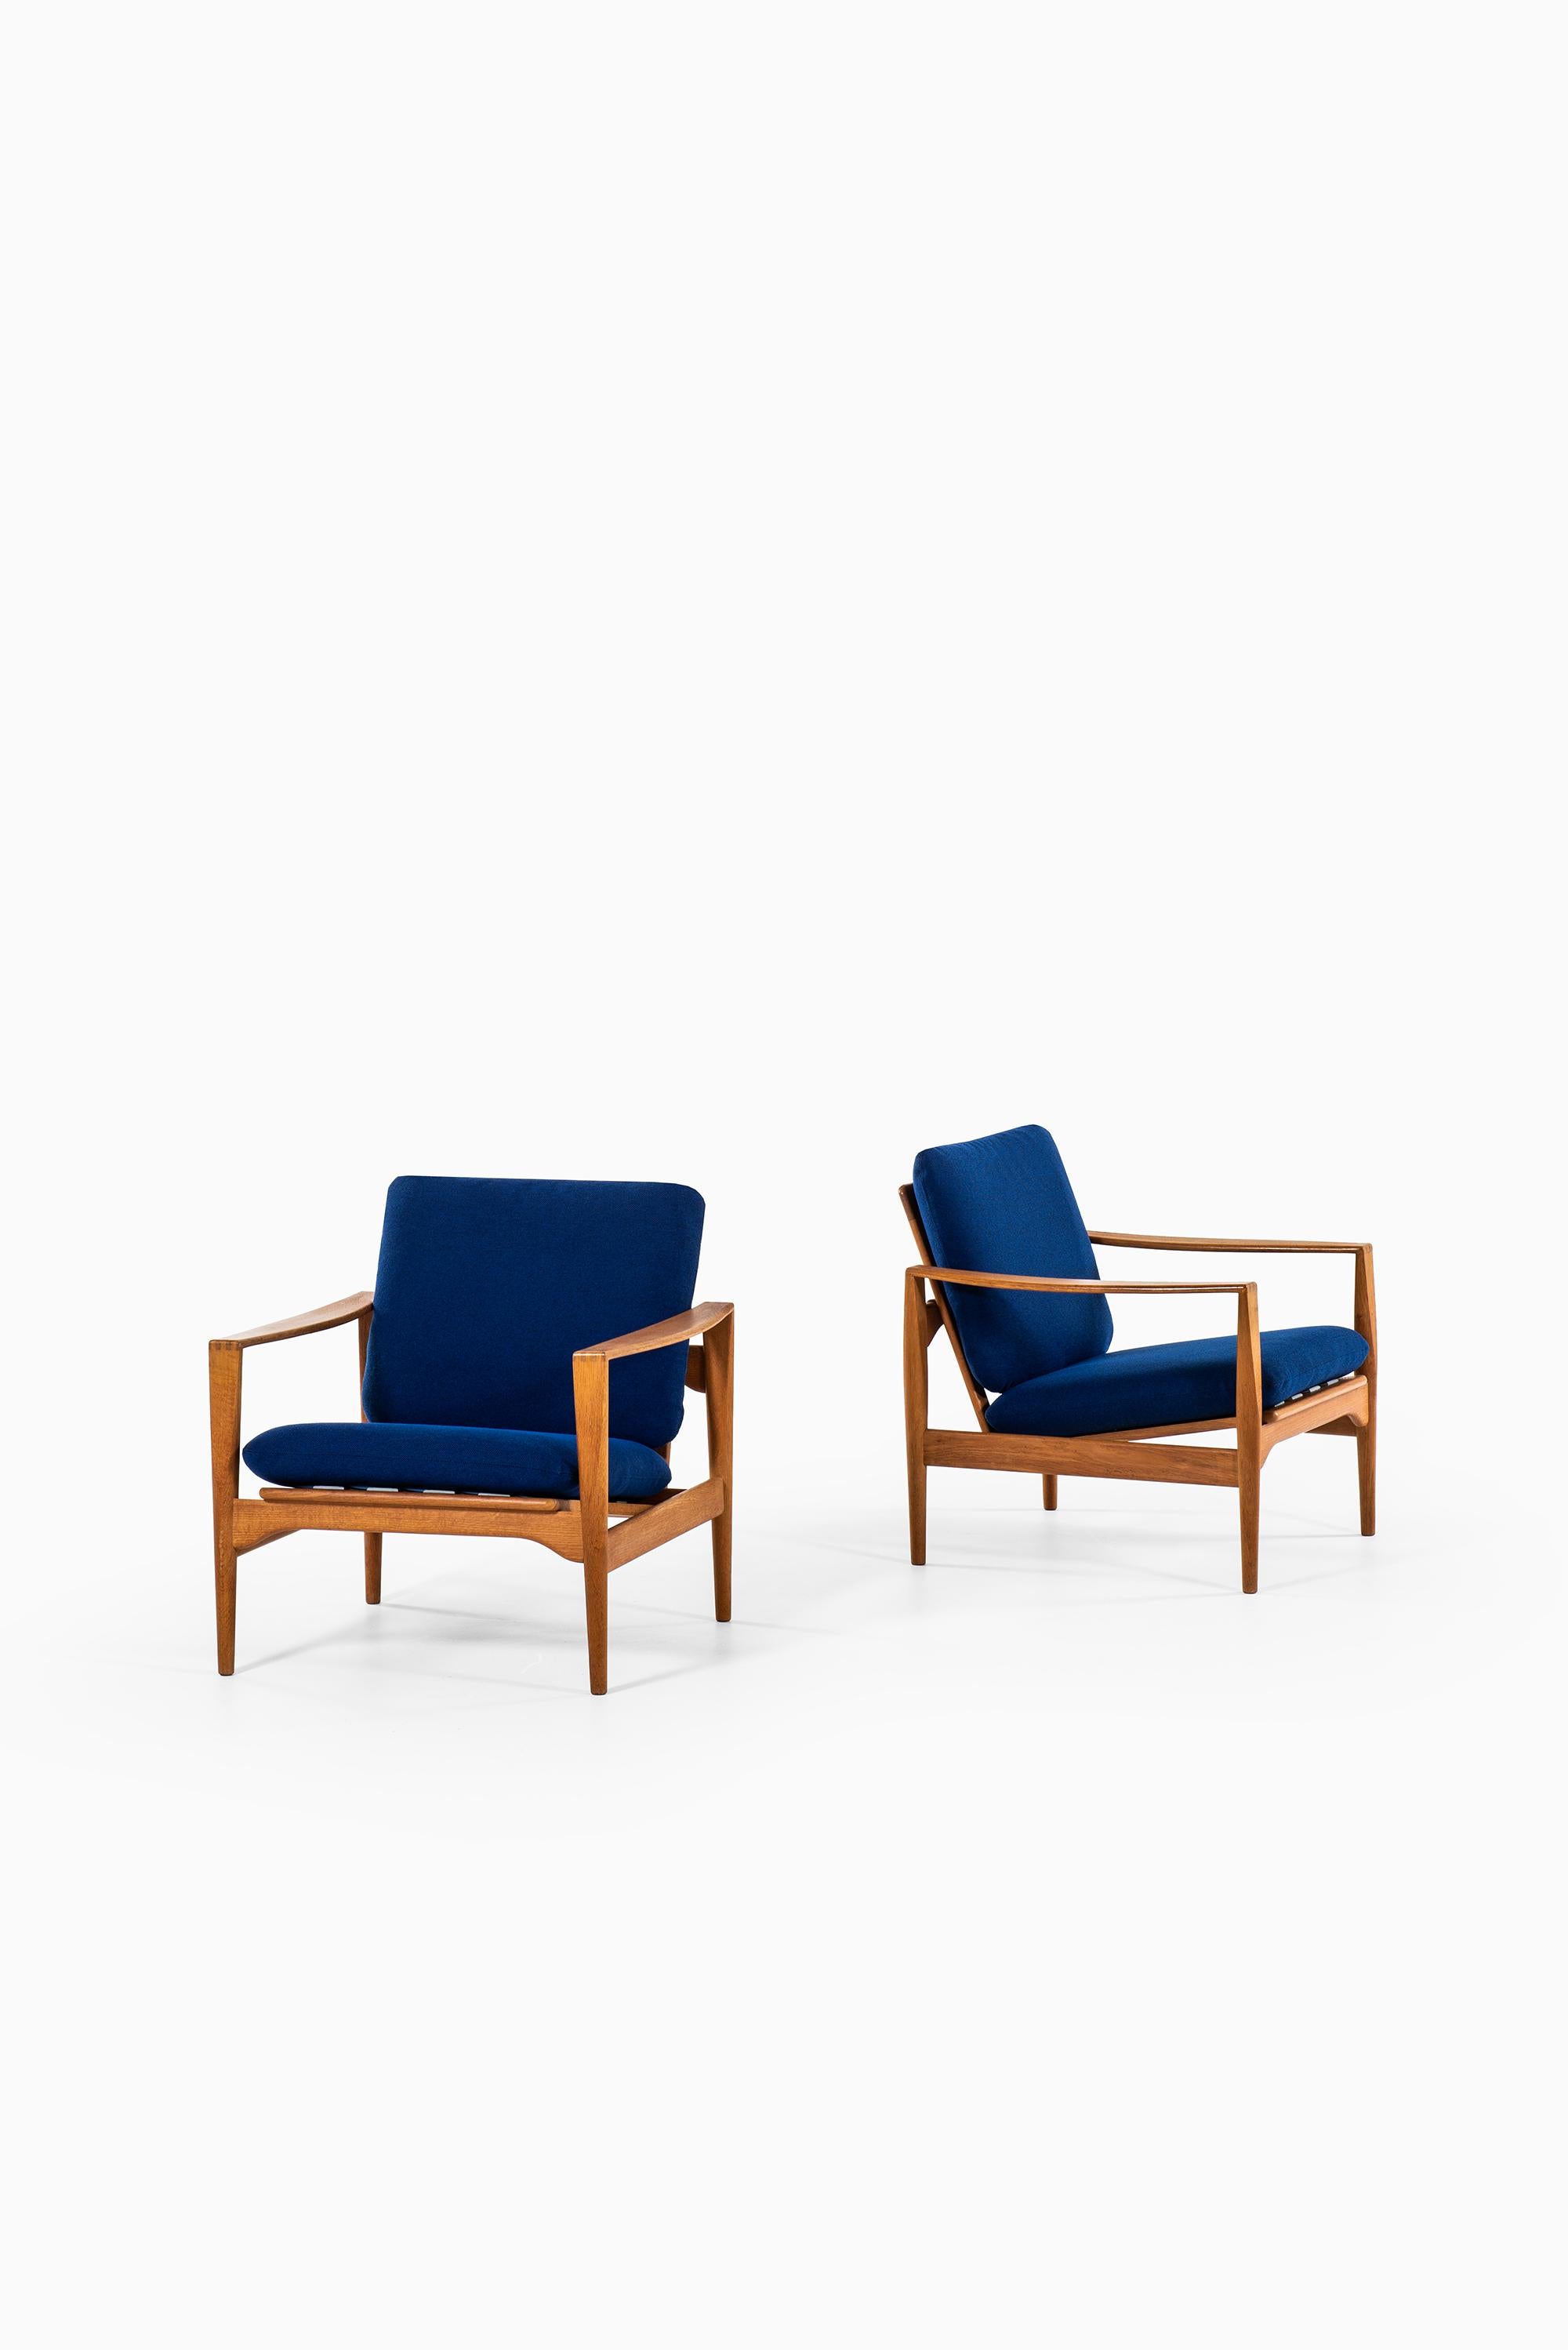 Rare pair of easy chairs model Ek designed by Illum Wikkelsø. Produced by Niels Eilersen in Denmark.